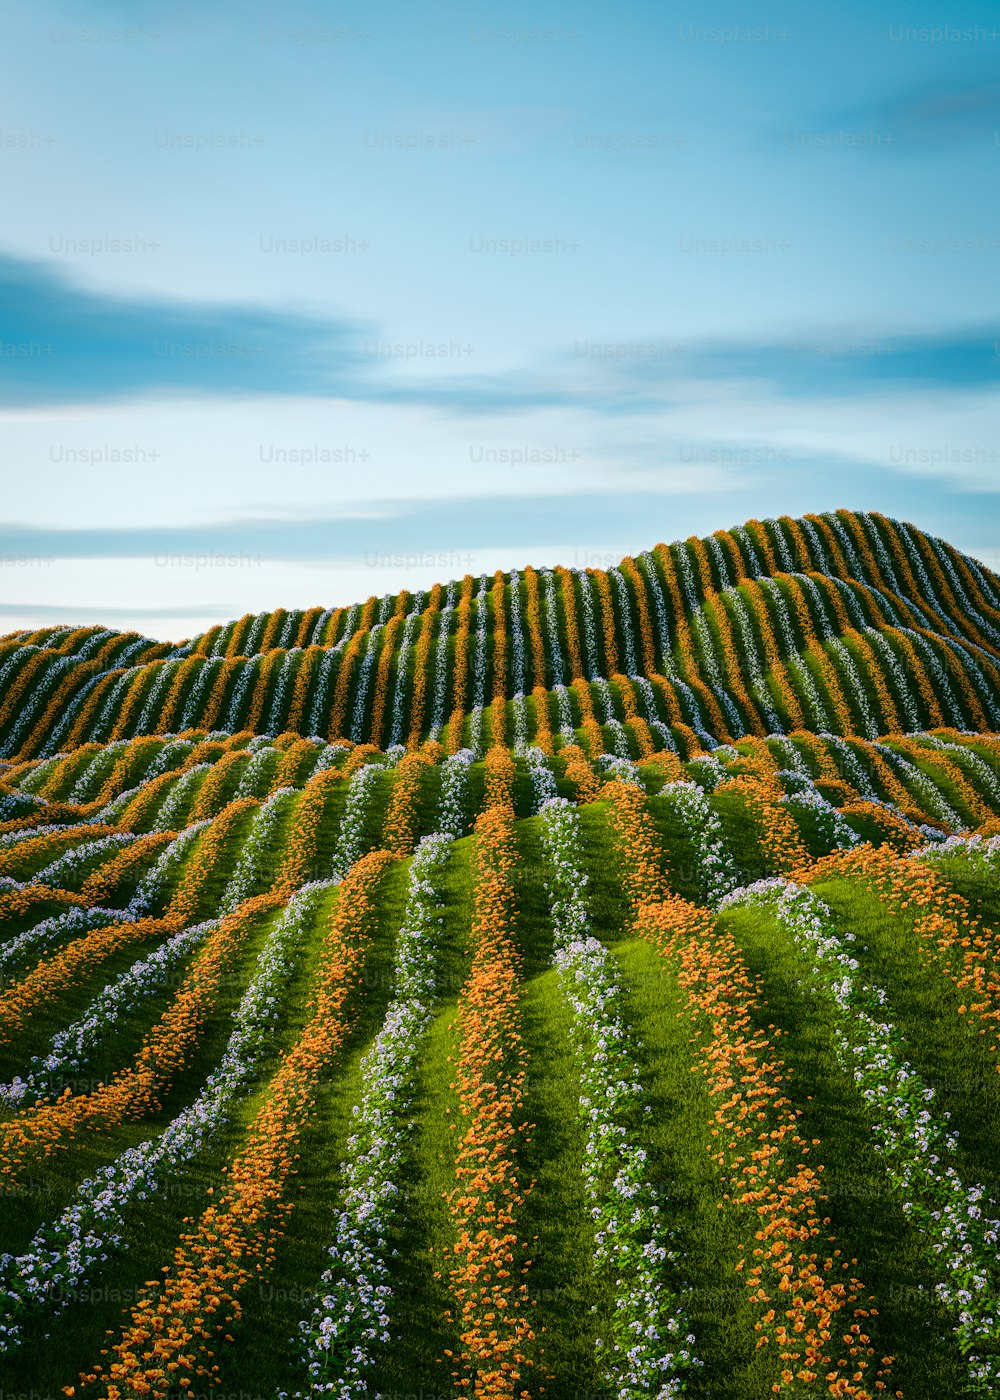 ein Blumenfeld mit einem Hügel im Hintergrund